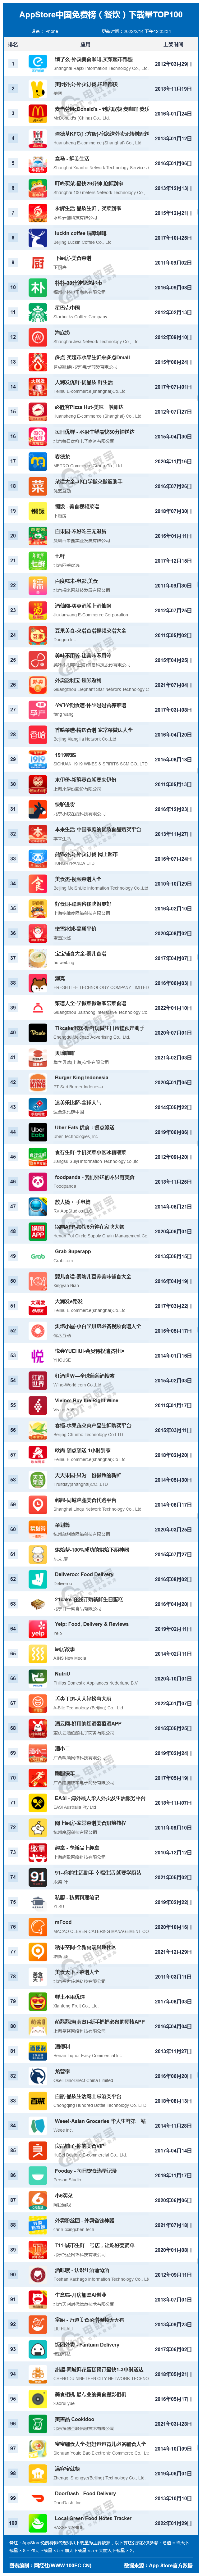 2月AppStore中国免费榜(餐饮)TOP100：饿了么 美团 盒马等居前十